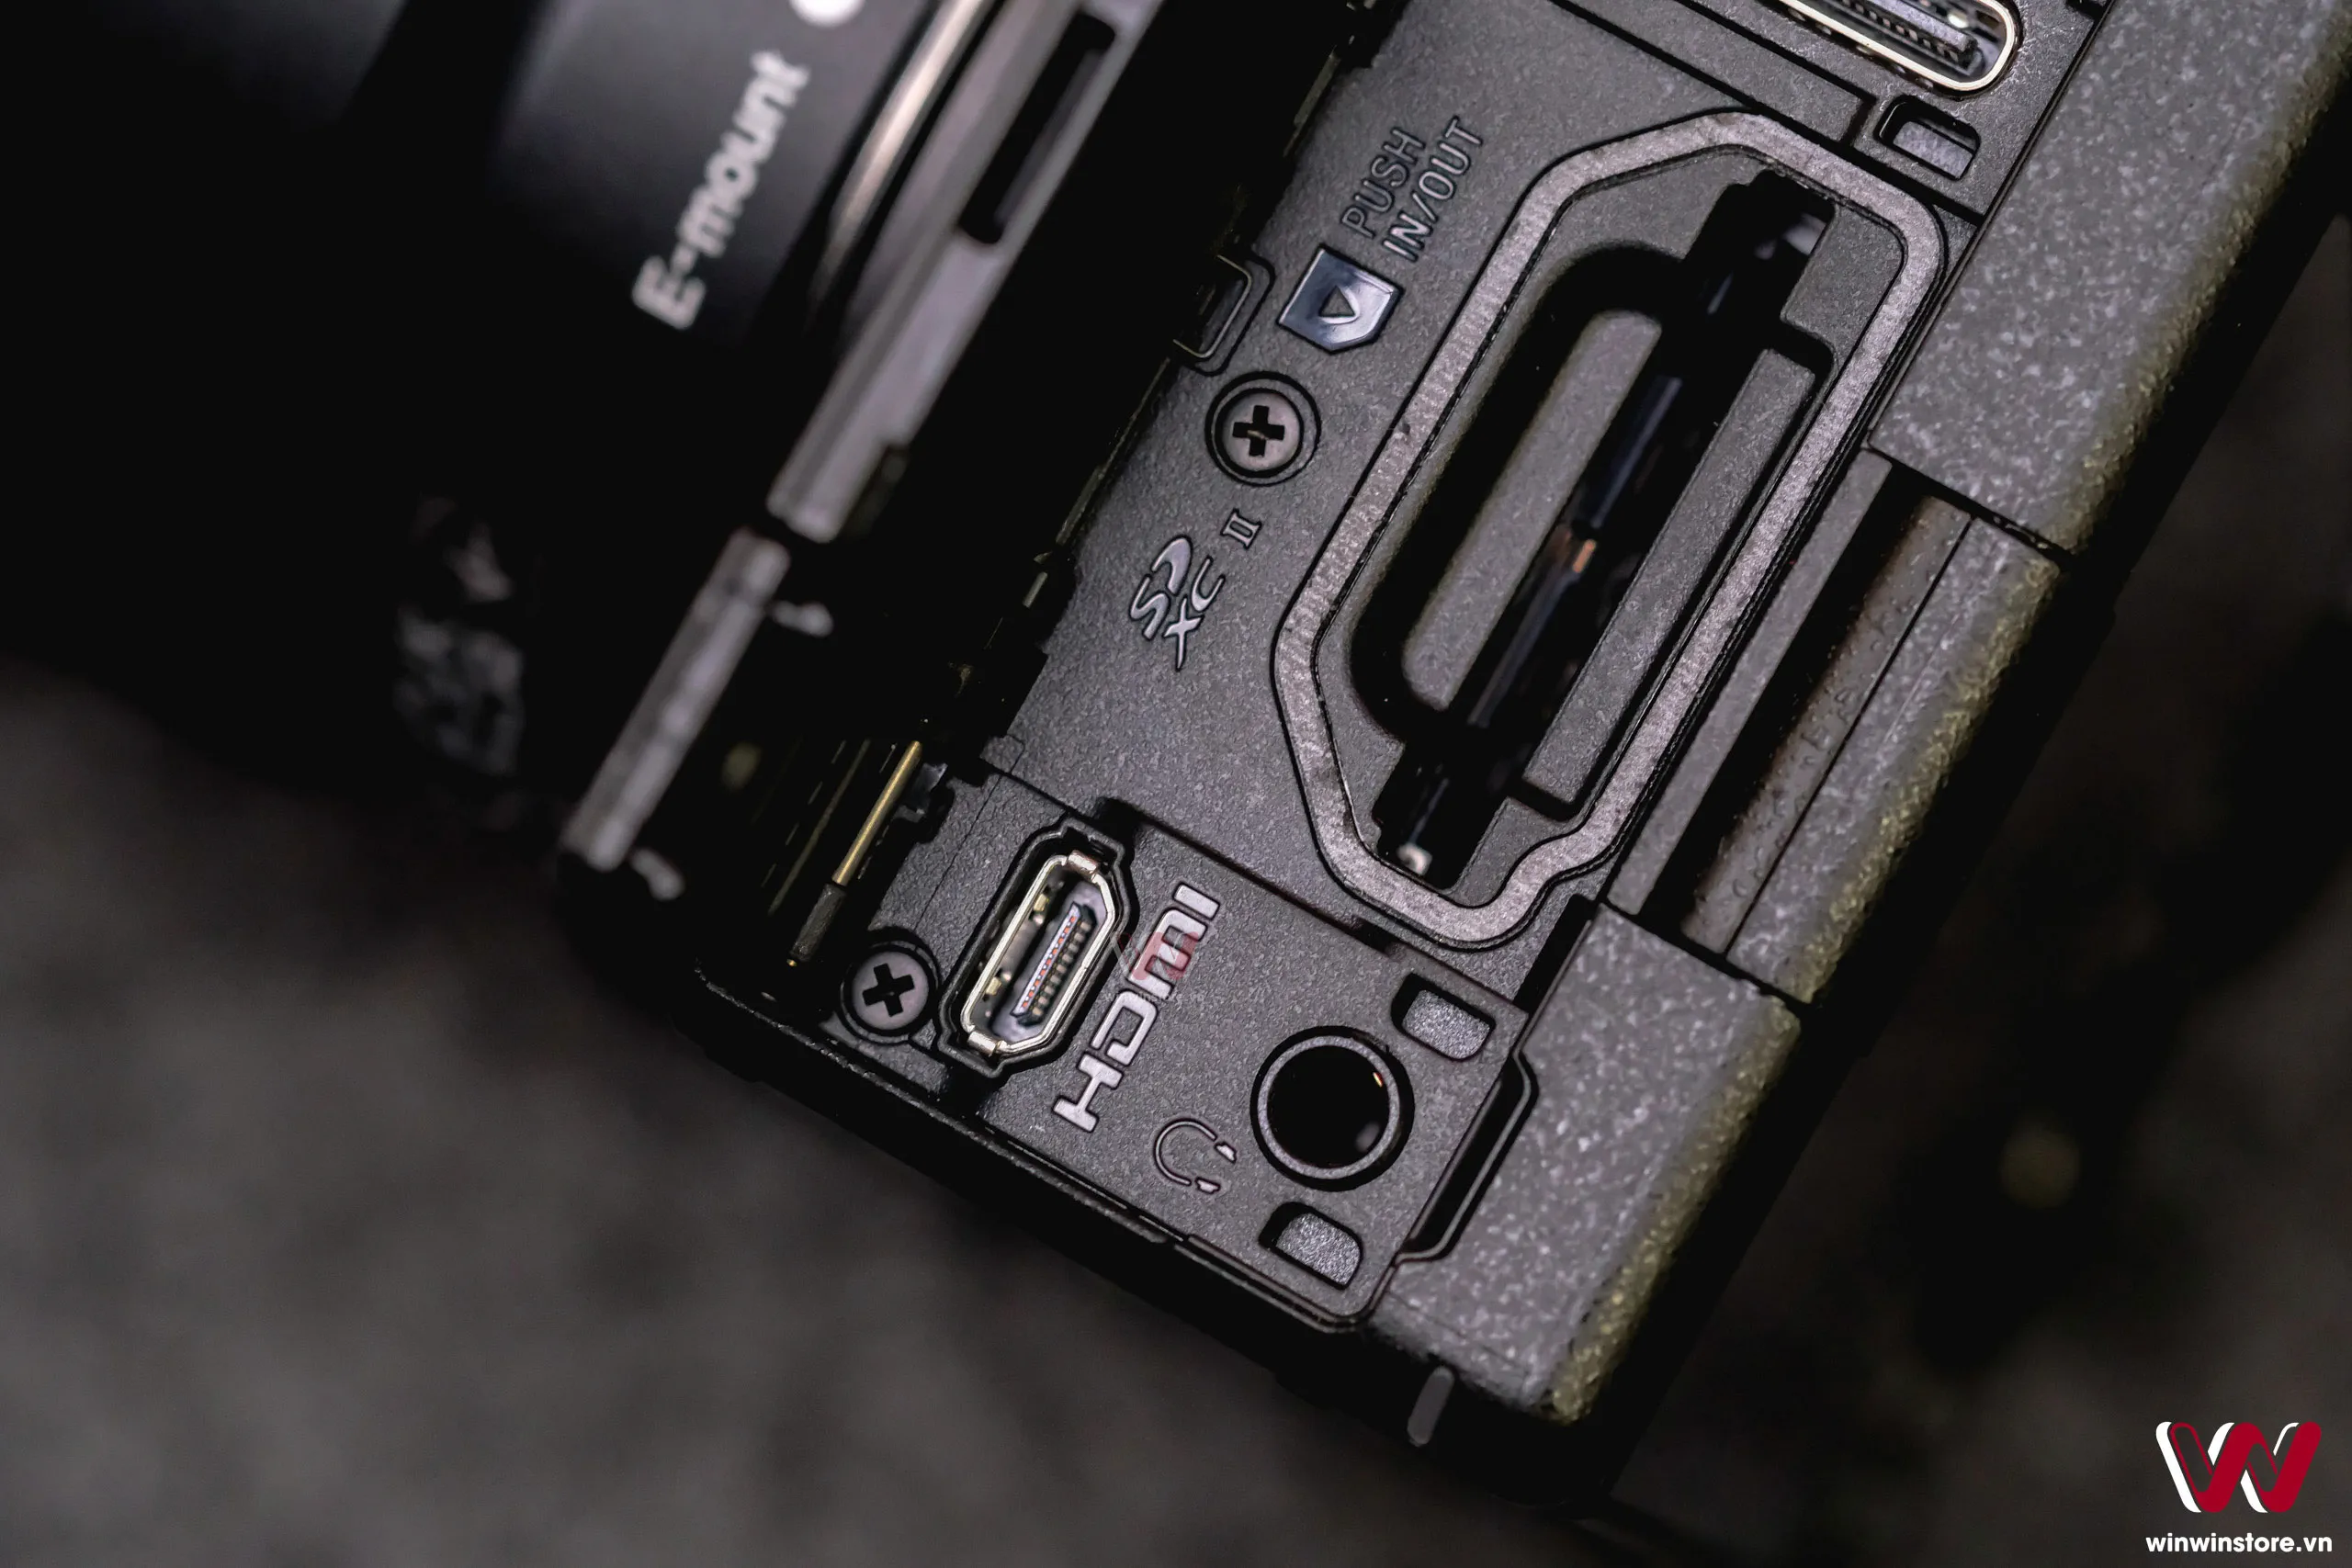 Trên tay Sony a6700: Ngoại hình quen thuộc, nâng cấp mạnh về cấu hình và hiệu năng